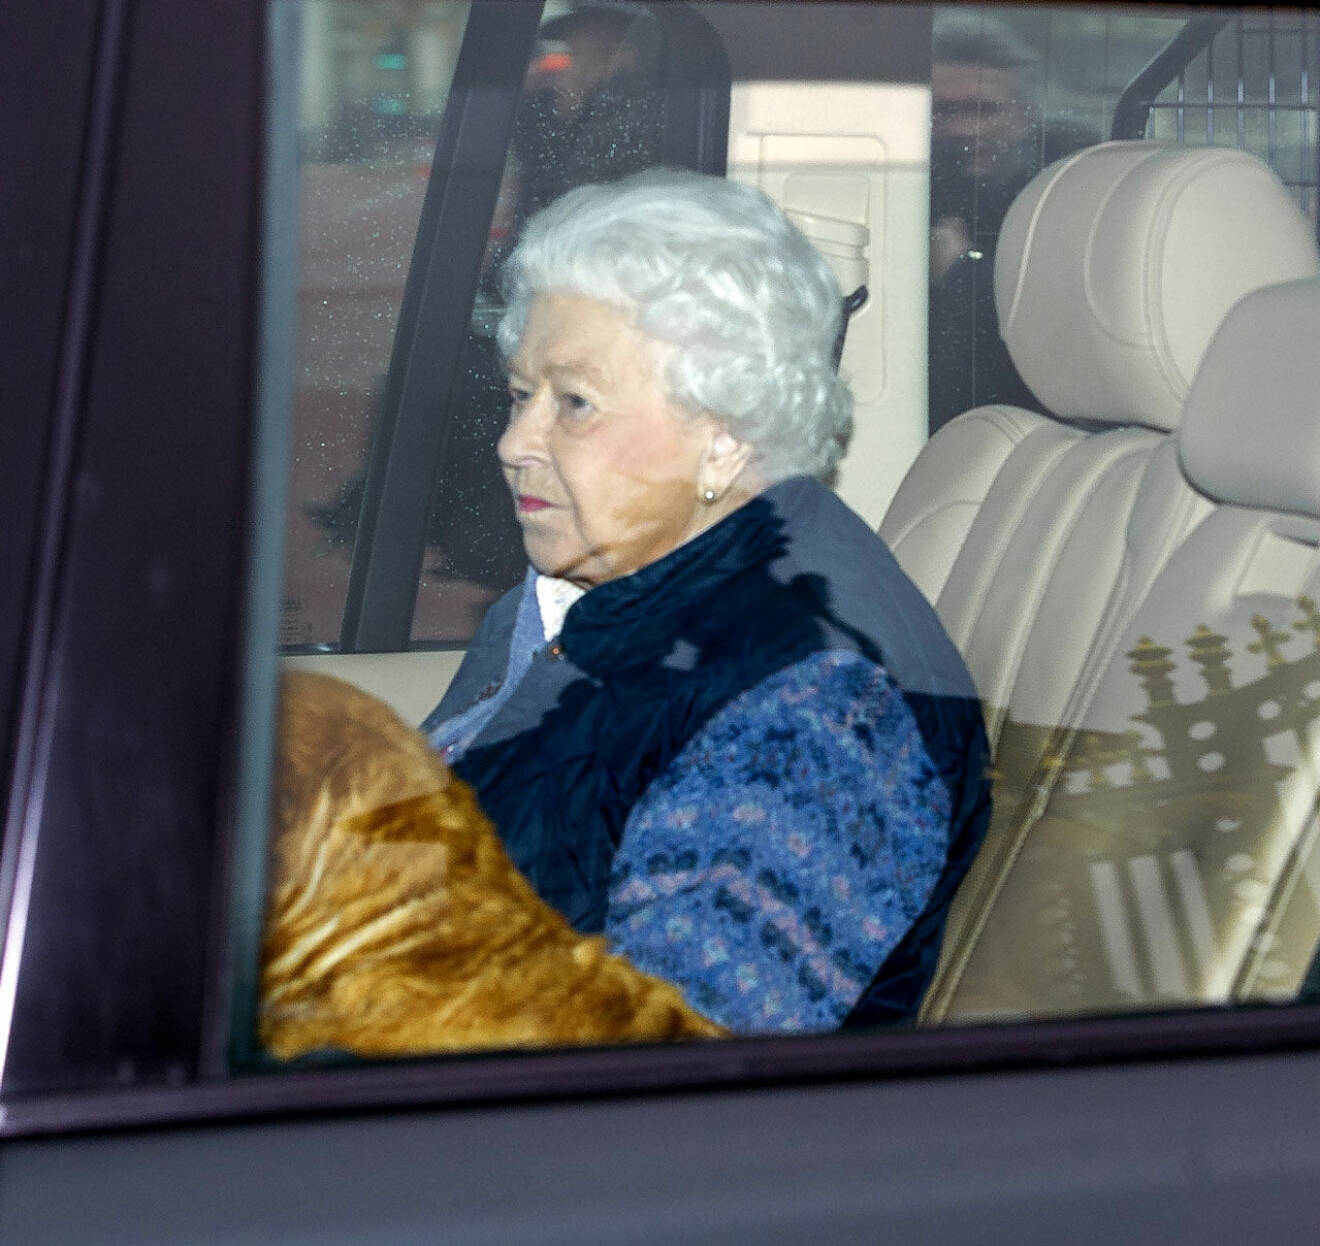 Drottning Elizabeth och hennes hund på väg till isoleringen på Windsor Castle.